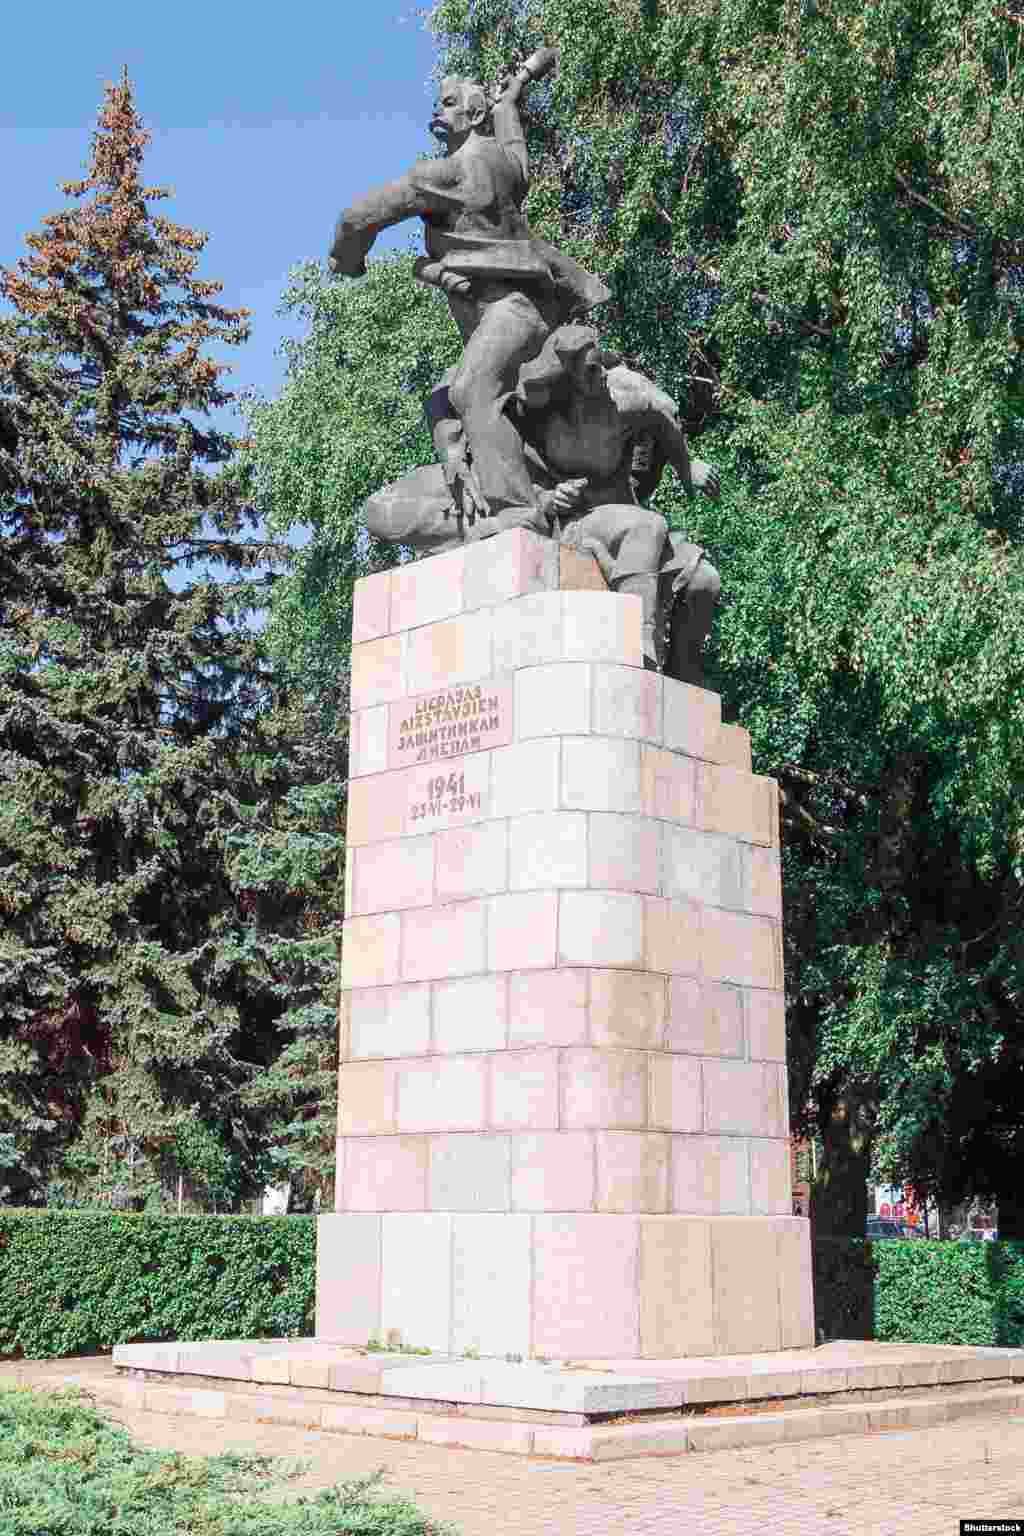 Паметникът на Защитниците на Лиепая в Западна Литва. Статуята, наричана още &quot;хвърляча на граната&quot;, показва работник, който се бие срещу нацистката инвазия през 1941 г. заедно със съветски моряк и парамедик. Монументът беще свален през октомври 2022 г.&nbsp; Снимката е от септември 2022 г.